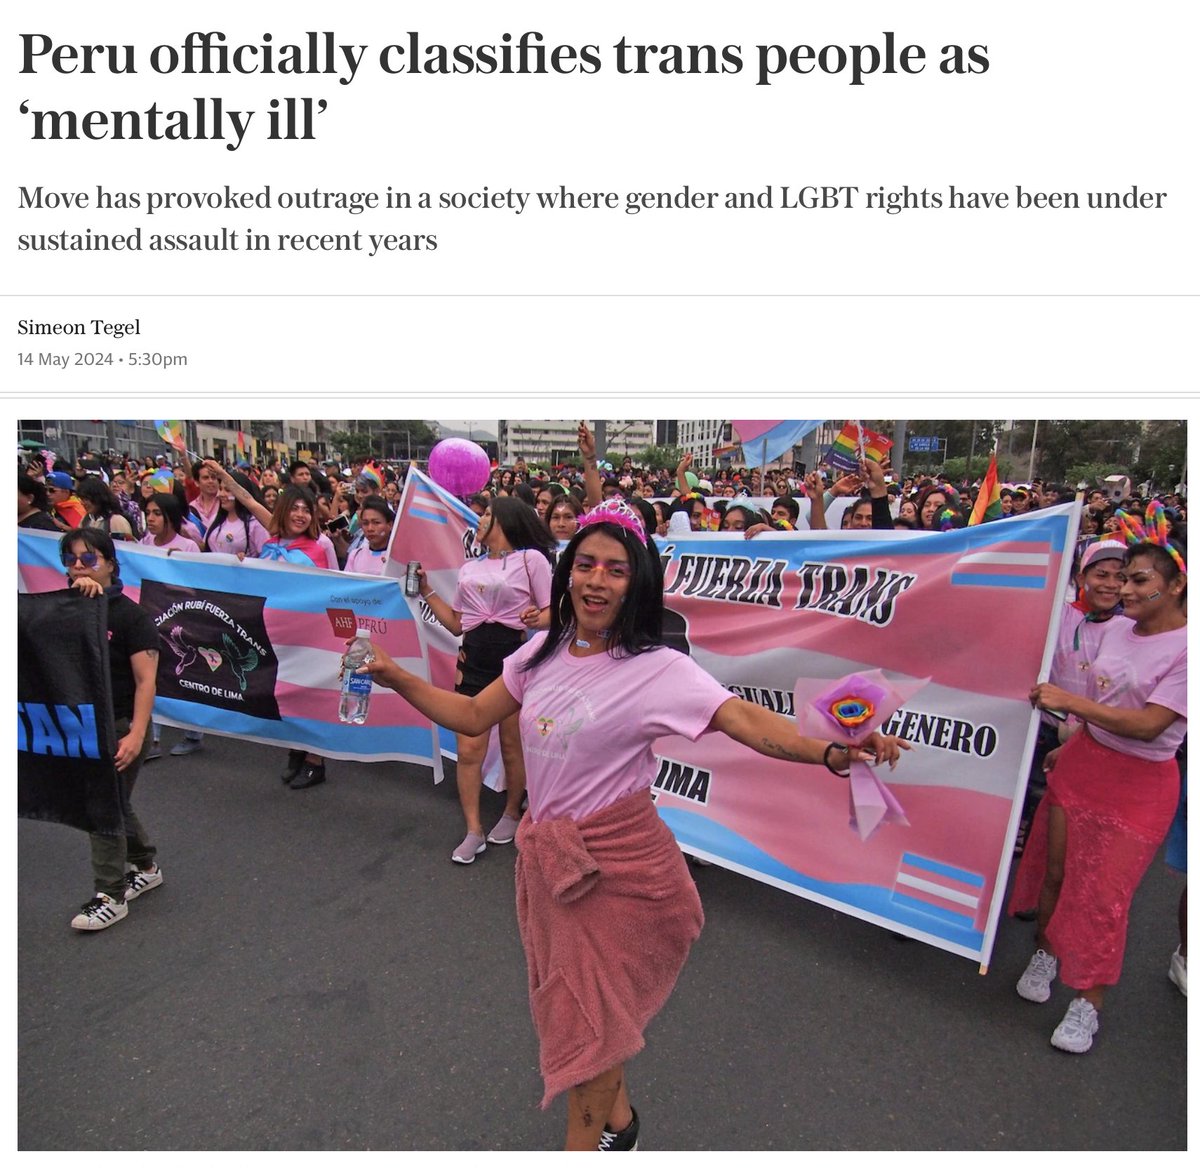 Die Regierung Peru|s hat offiziell 'Trans' und 'intersexuelle' Menschen als psychisch krank deklariert.

Das ist natürlich wirklich lustig, denn Fanatikern à la Svenja Schulze, deren Motto Am-Regenbogen-soll-die-Welt-genesen heißt, wird es geradezu zweiteilen, wenn sie sich